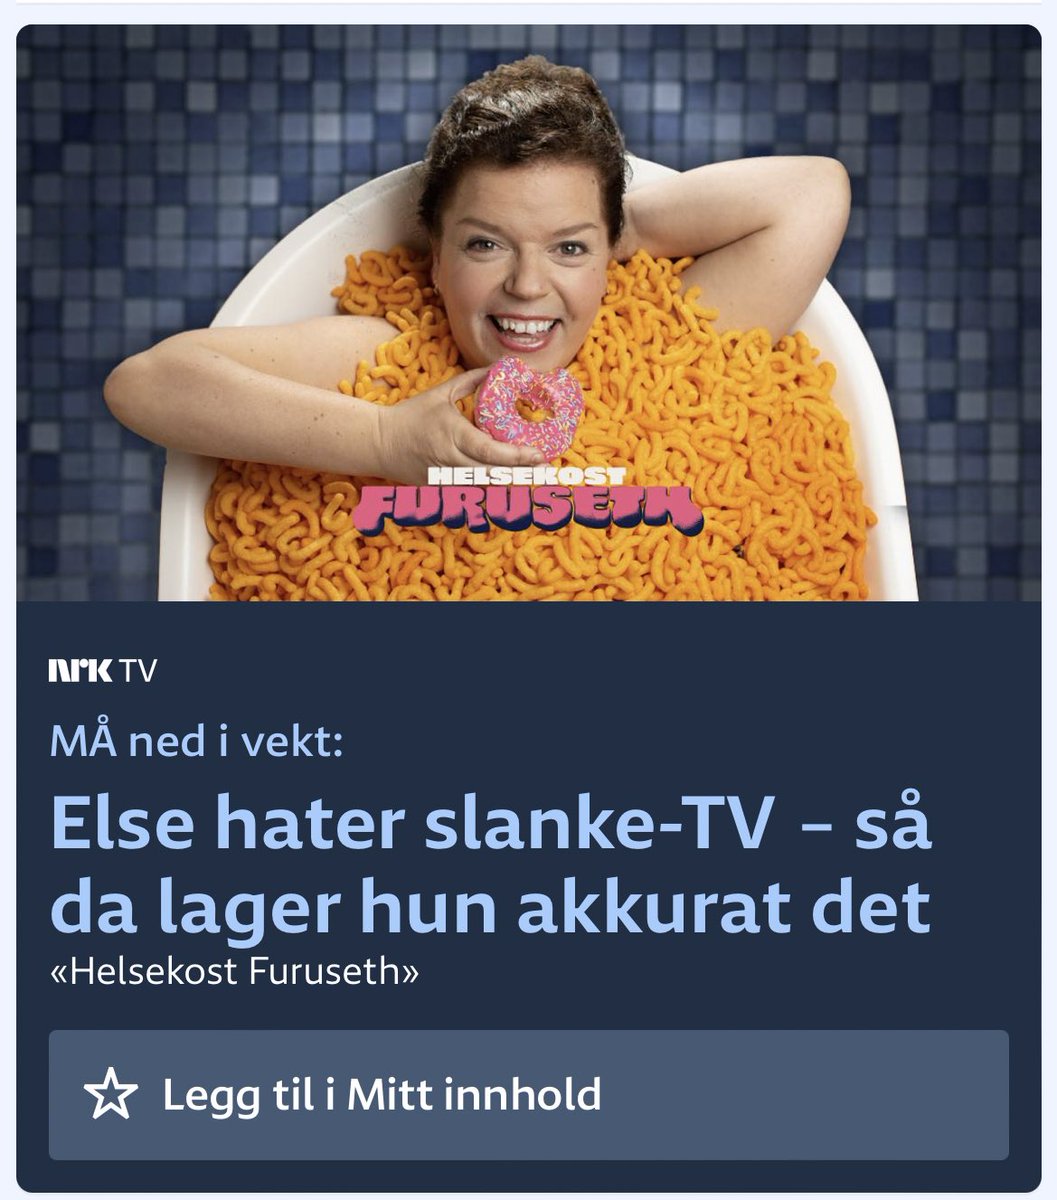 Det kjennest som at alt mitt arbeid med å redusere matsvinnet heime er heilt nyttelaust når NRK lagar promobilete som dette.